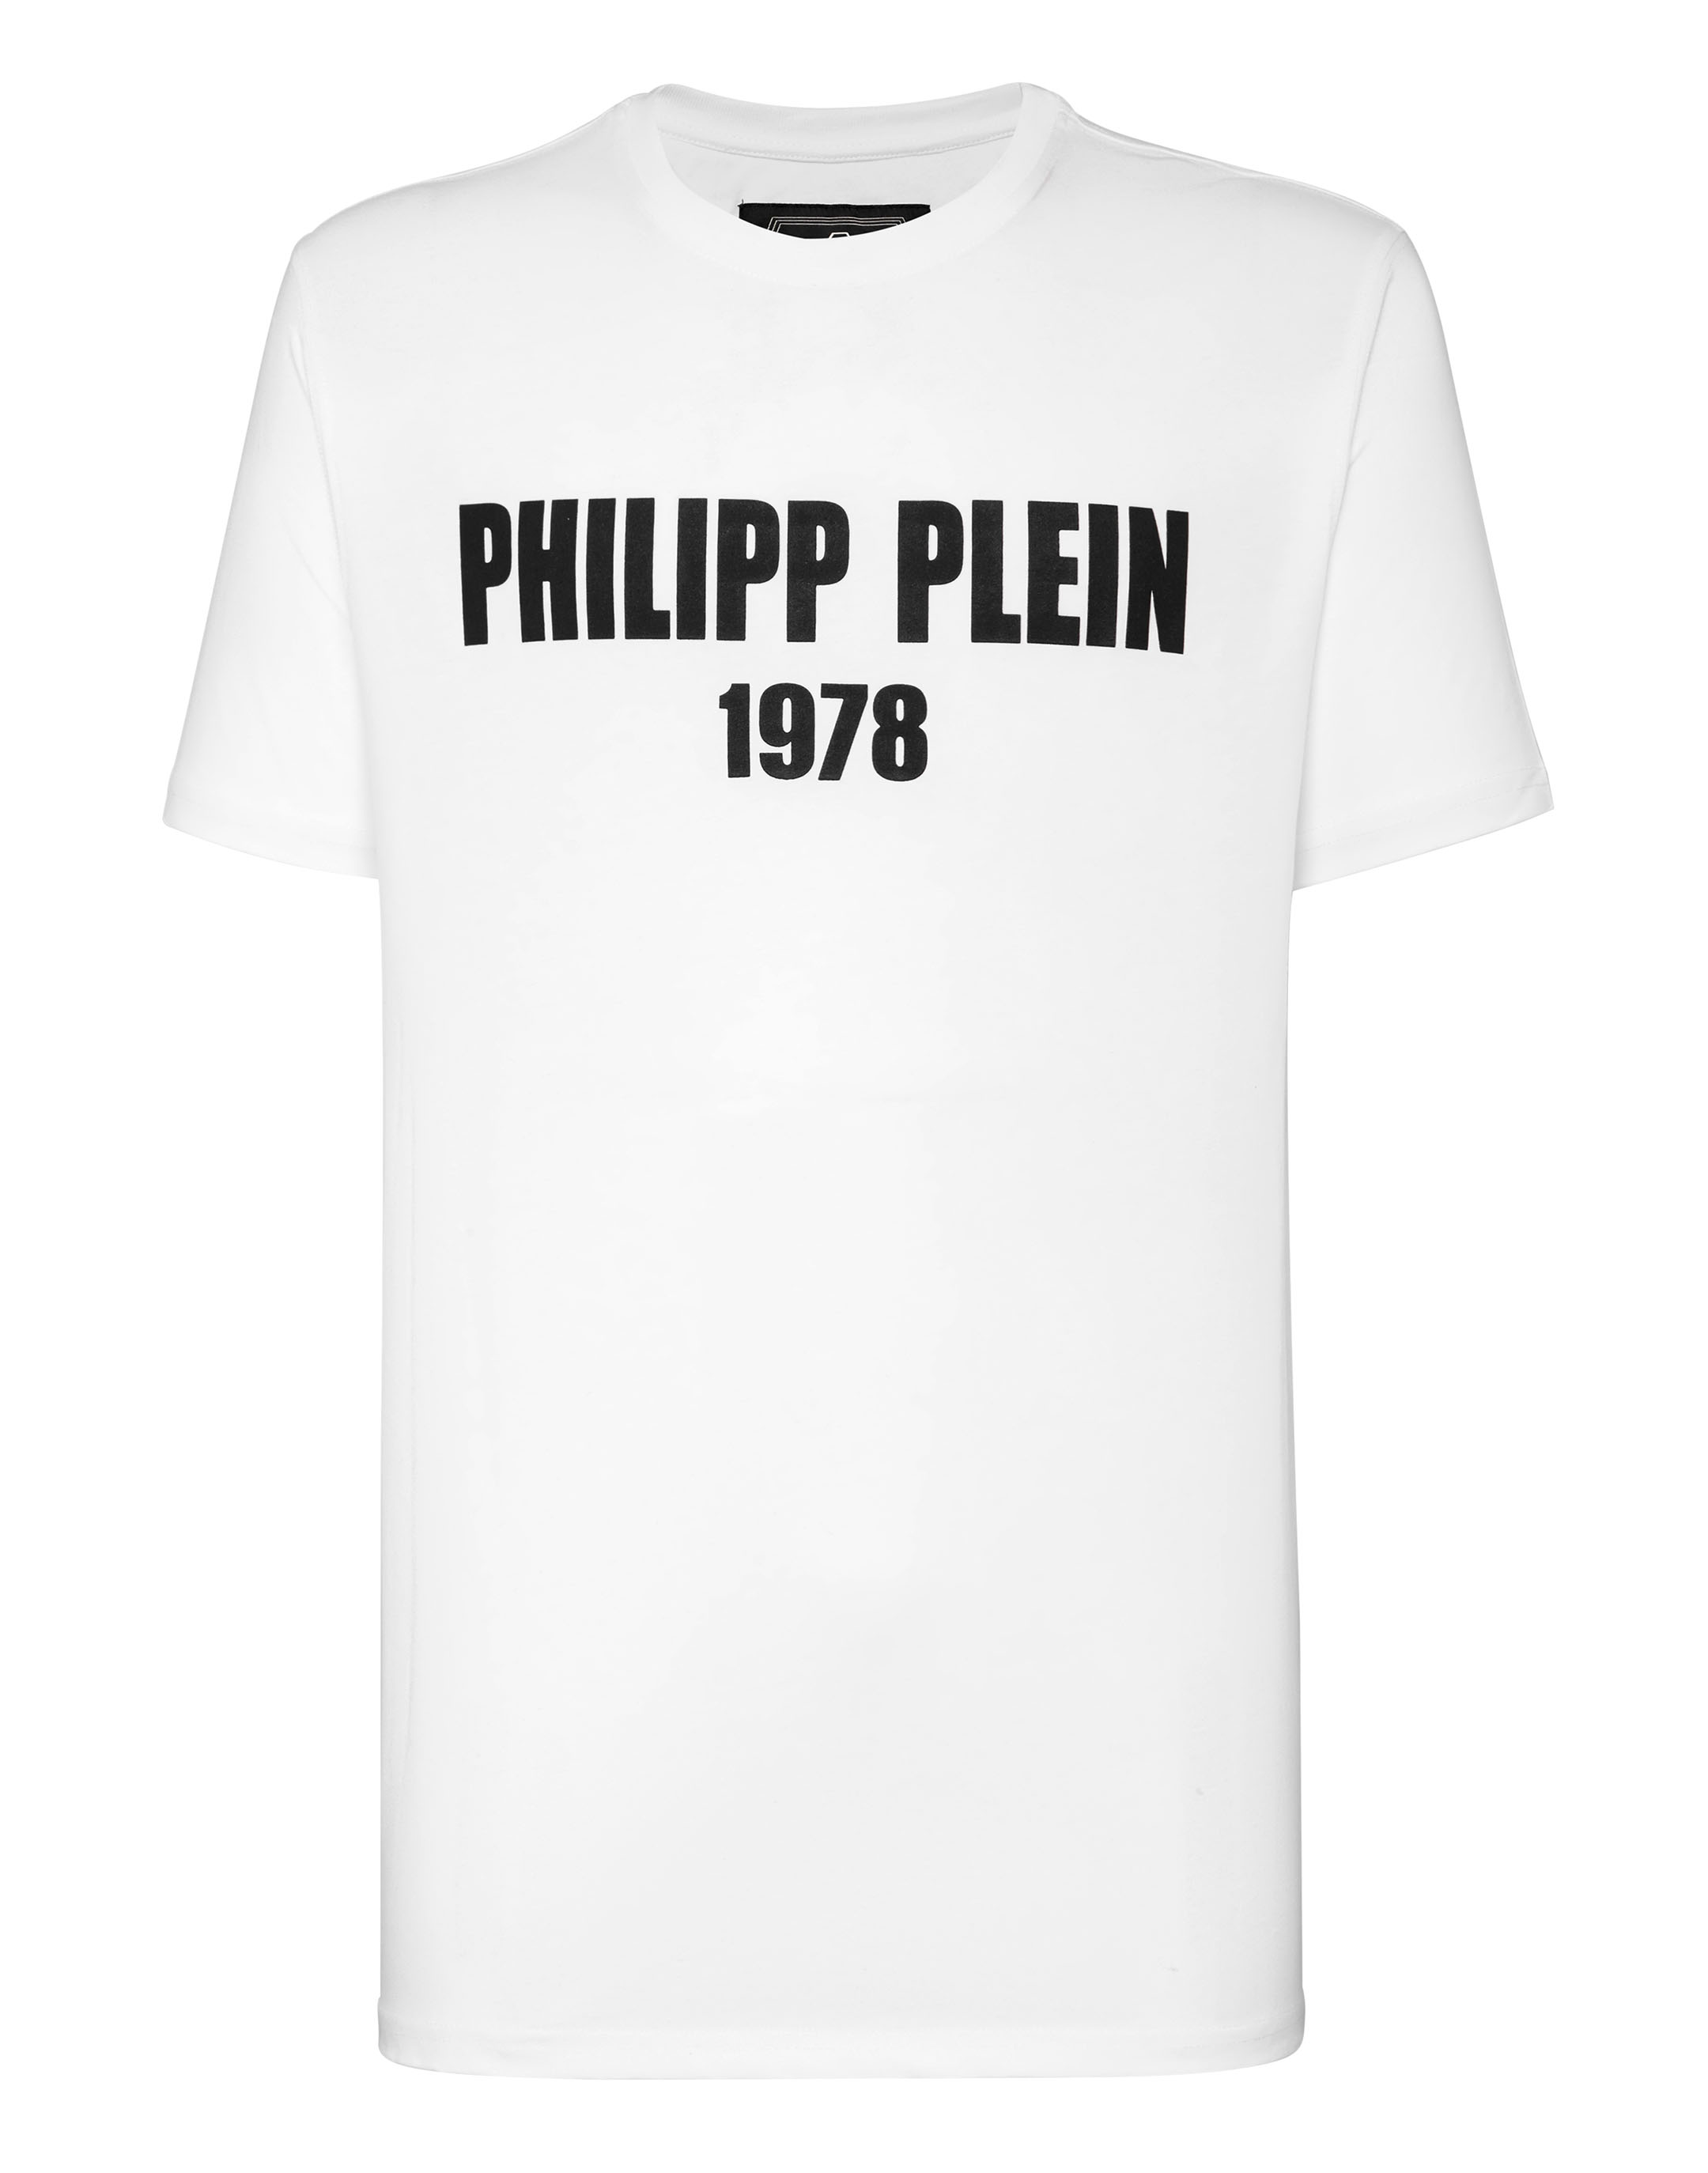 sırıtma görüntü usta philipp plein 1978 t shirt yapabilirsen Hatıra Dizüstü